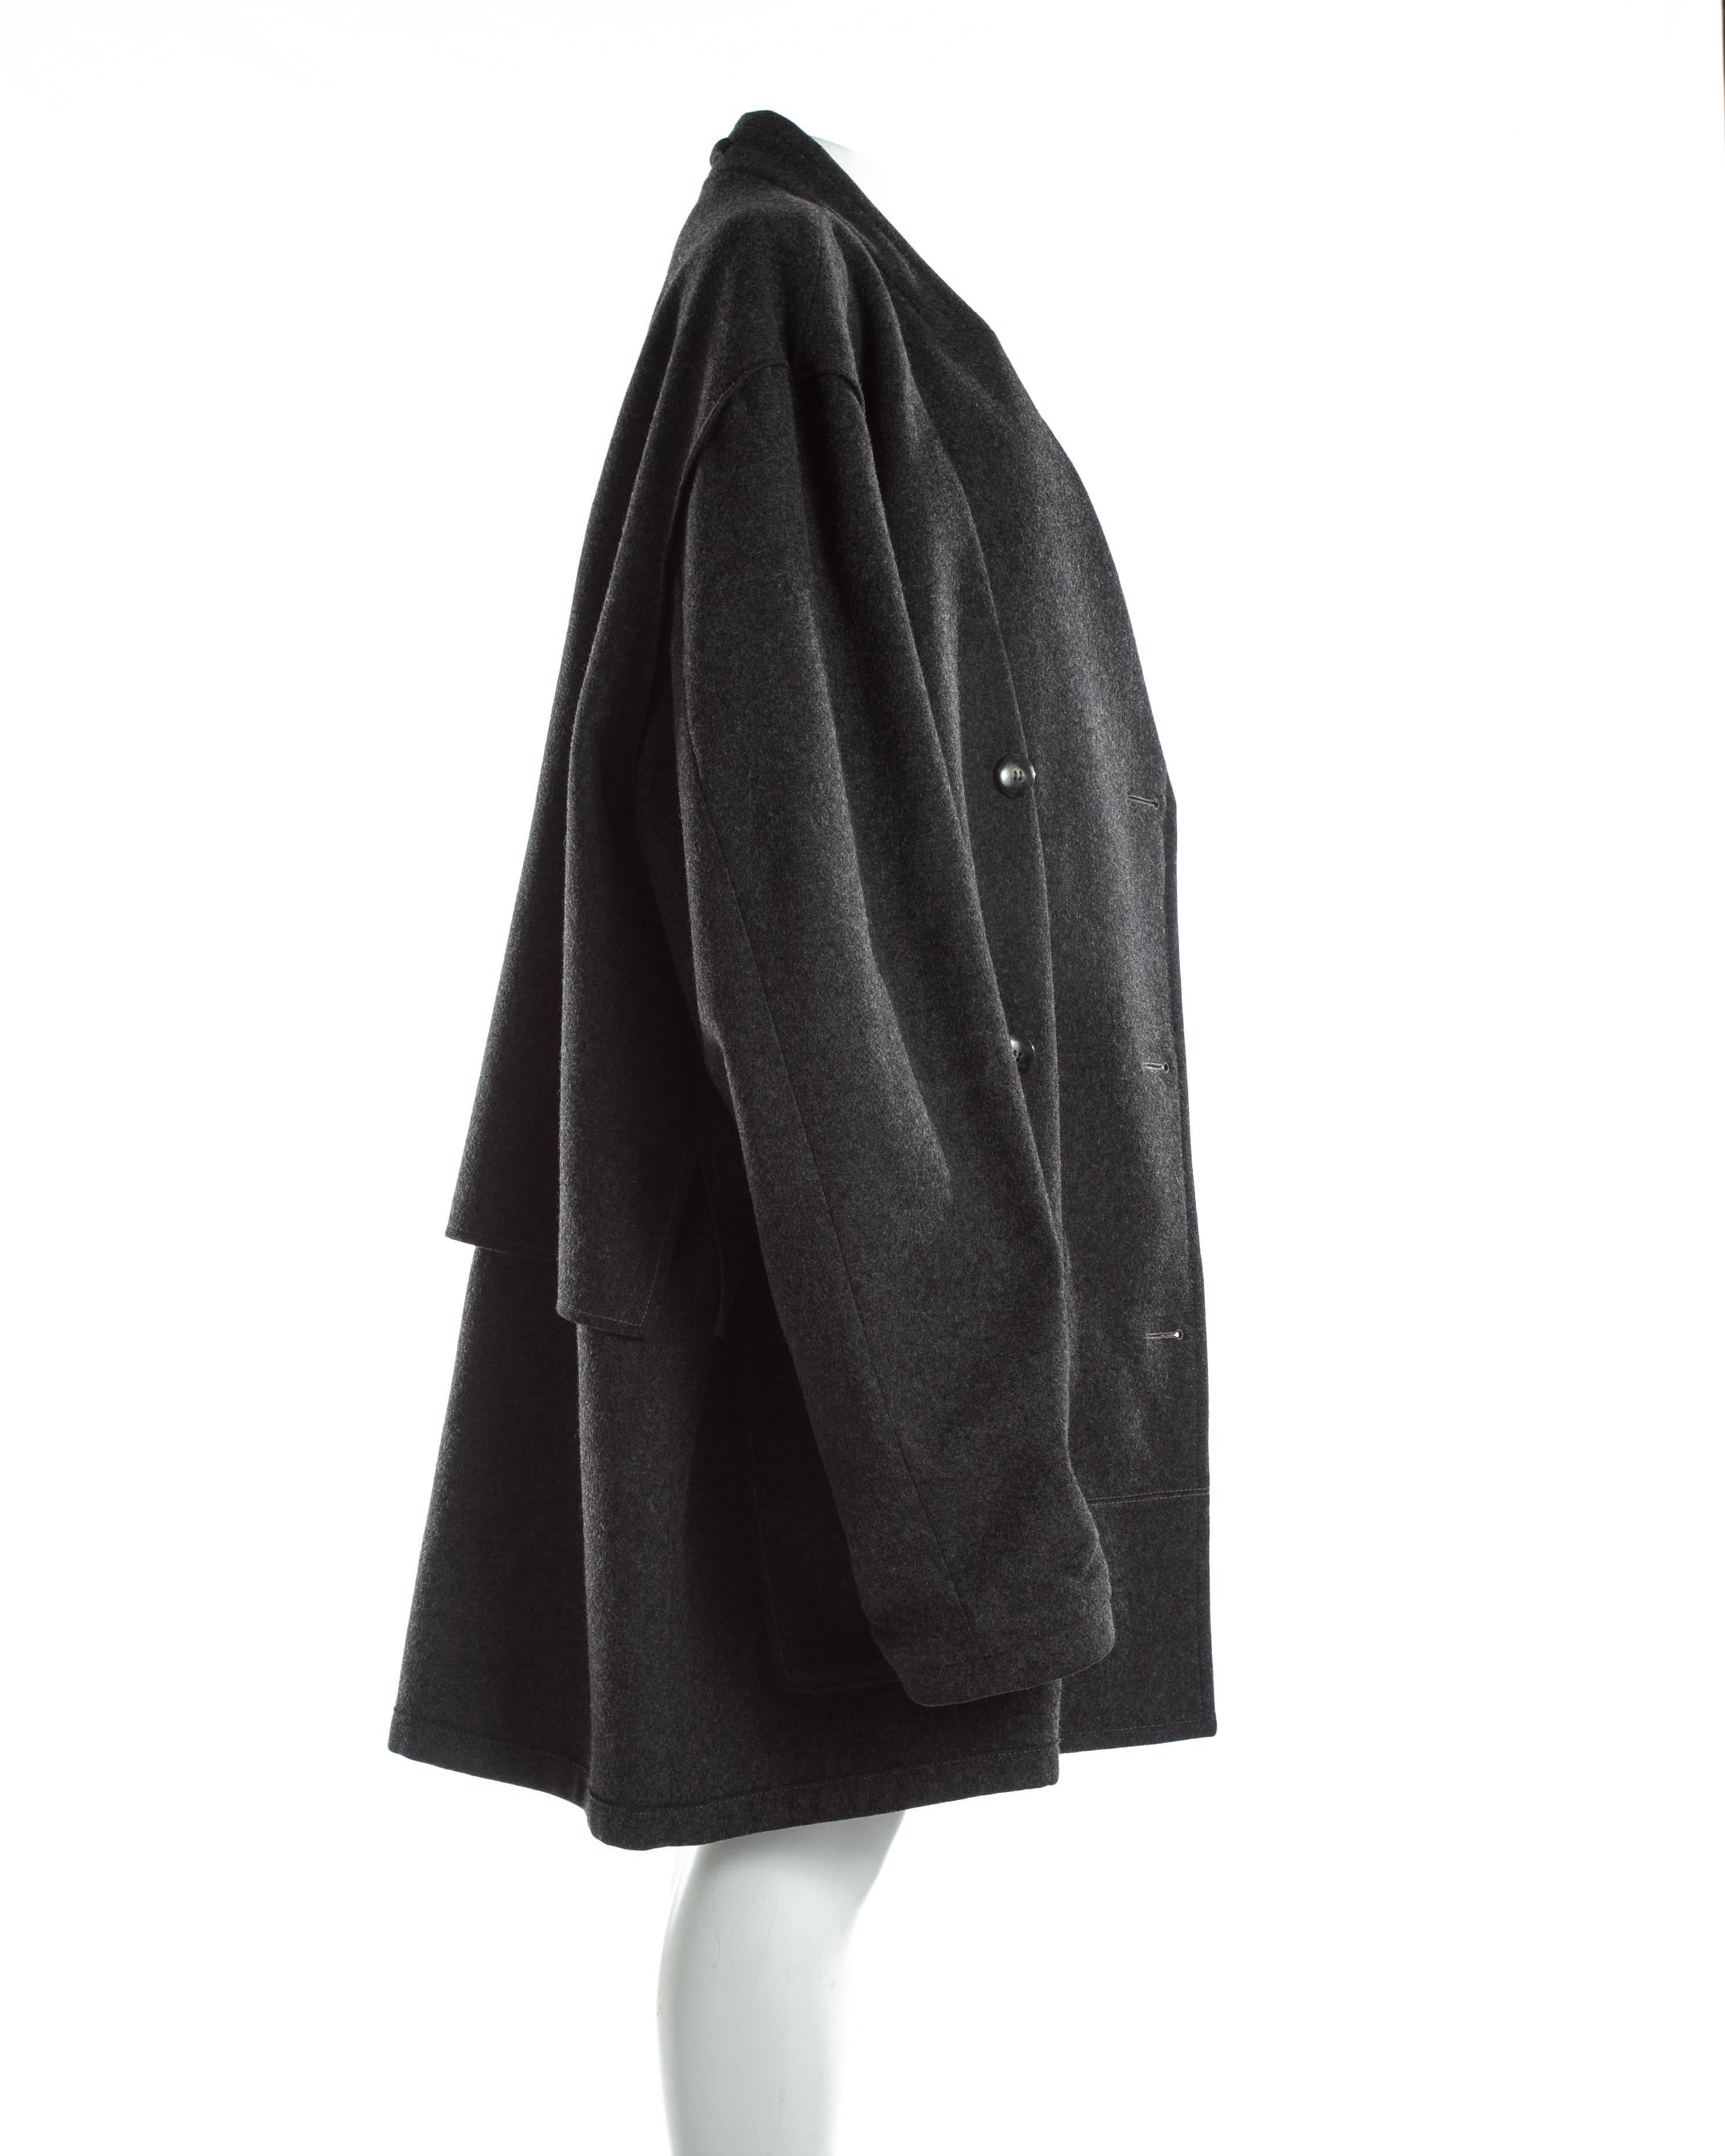 Women's or Men's Margiela charcoal melton wool overcoat, A / W 2000